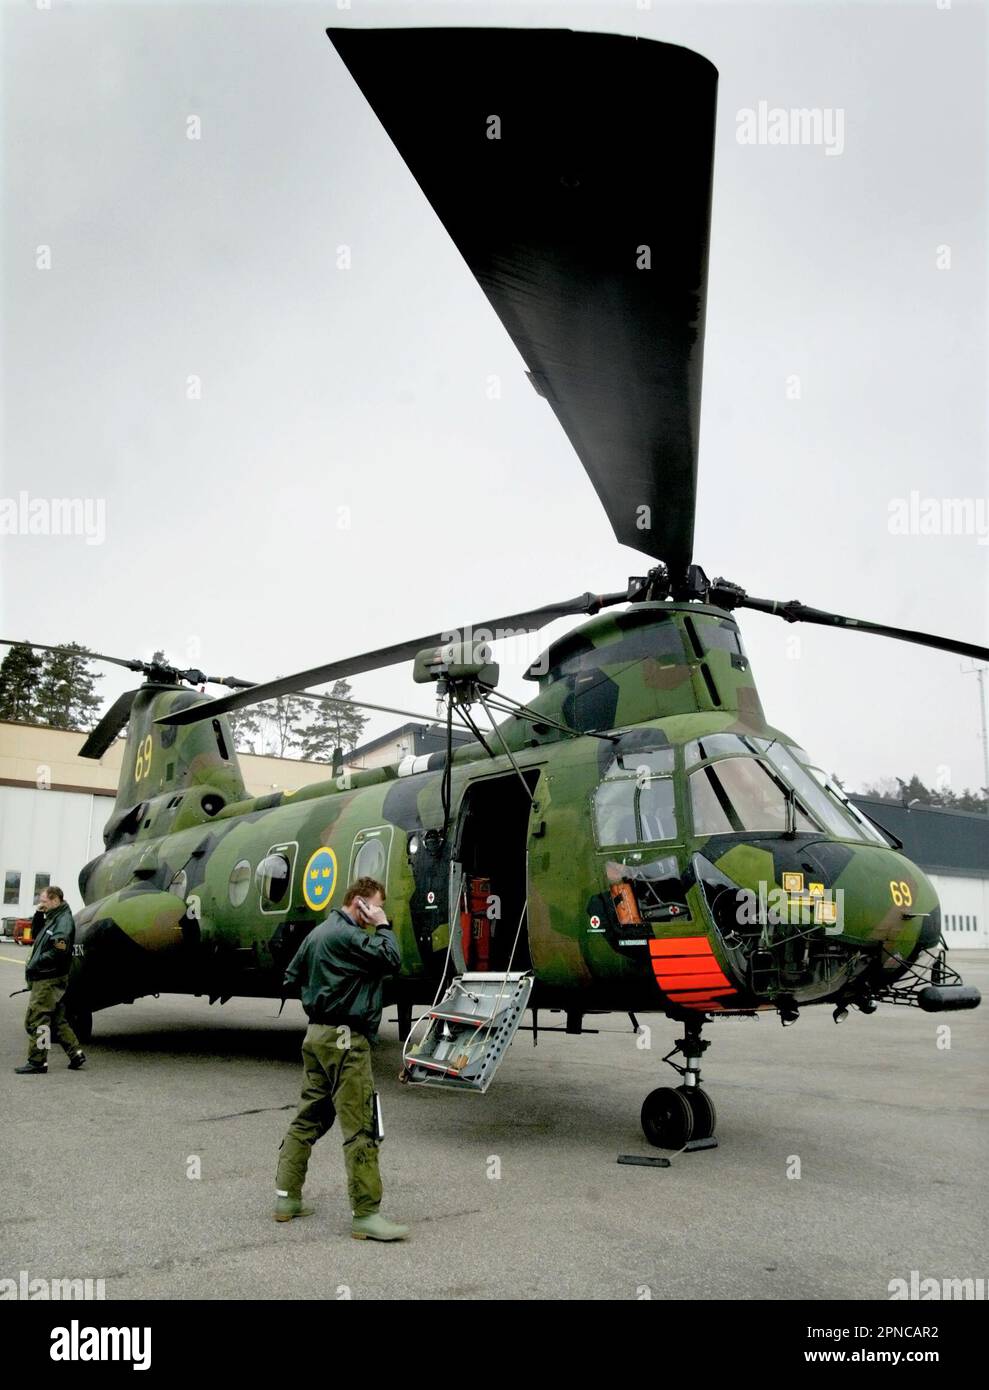 Helikopter 4 der schwedischen Luftwaffe, HKP 4, vom Helikopter-Bataillon, Marinestützpunkt Berga. HKP 4 wurde bei der U-Boot-Jagd und bei Rettungsmissionen wie der Estonia-Katastrophe eingesetzt. Stockfoto